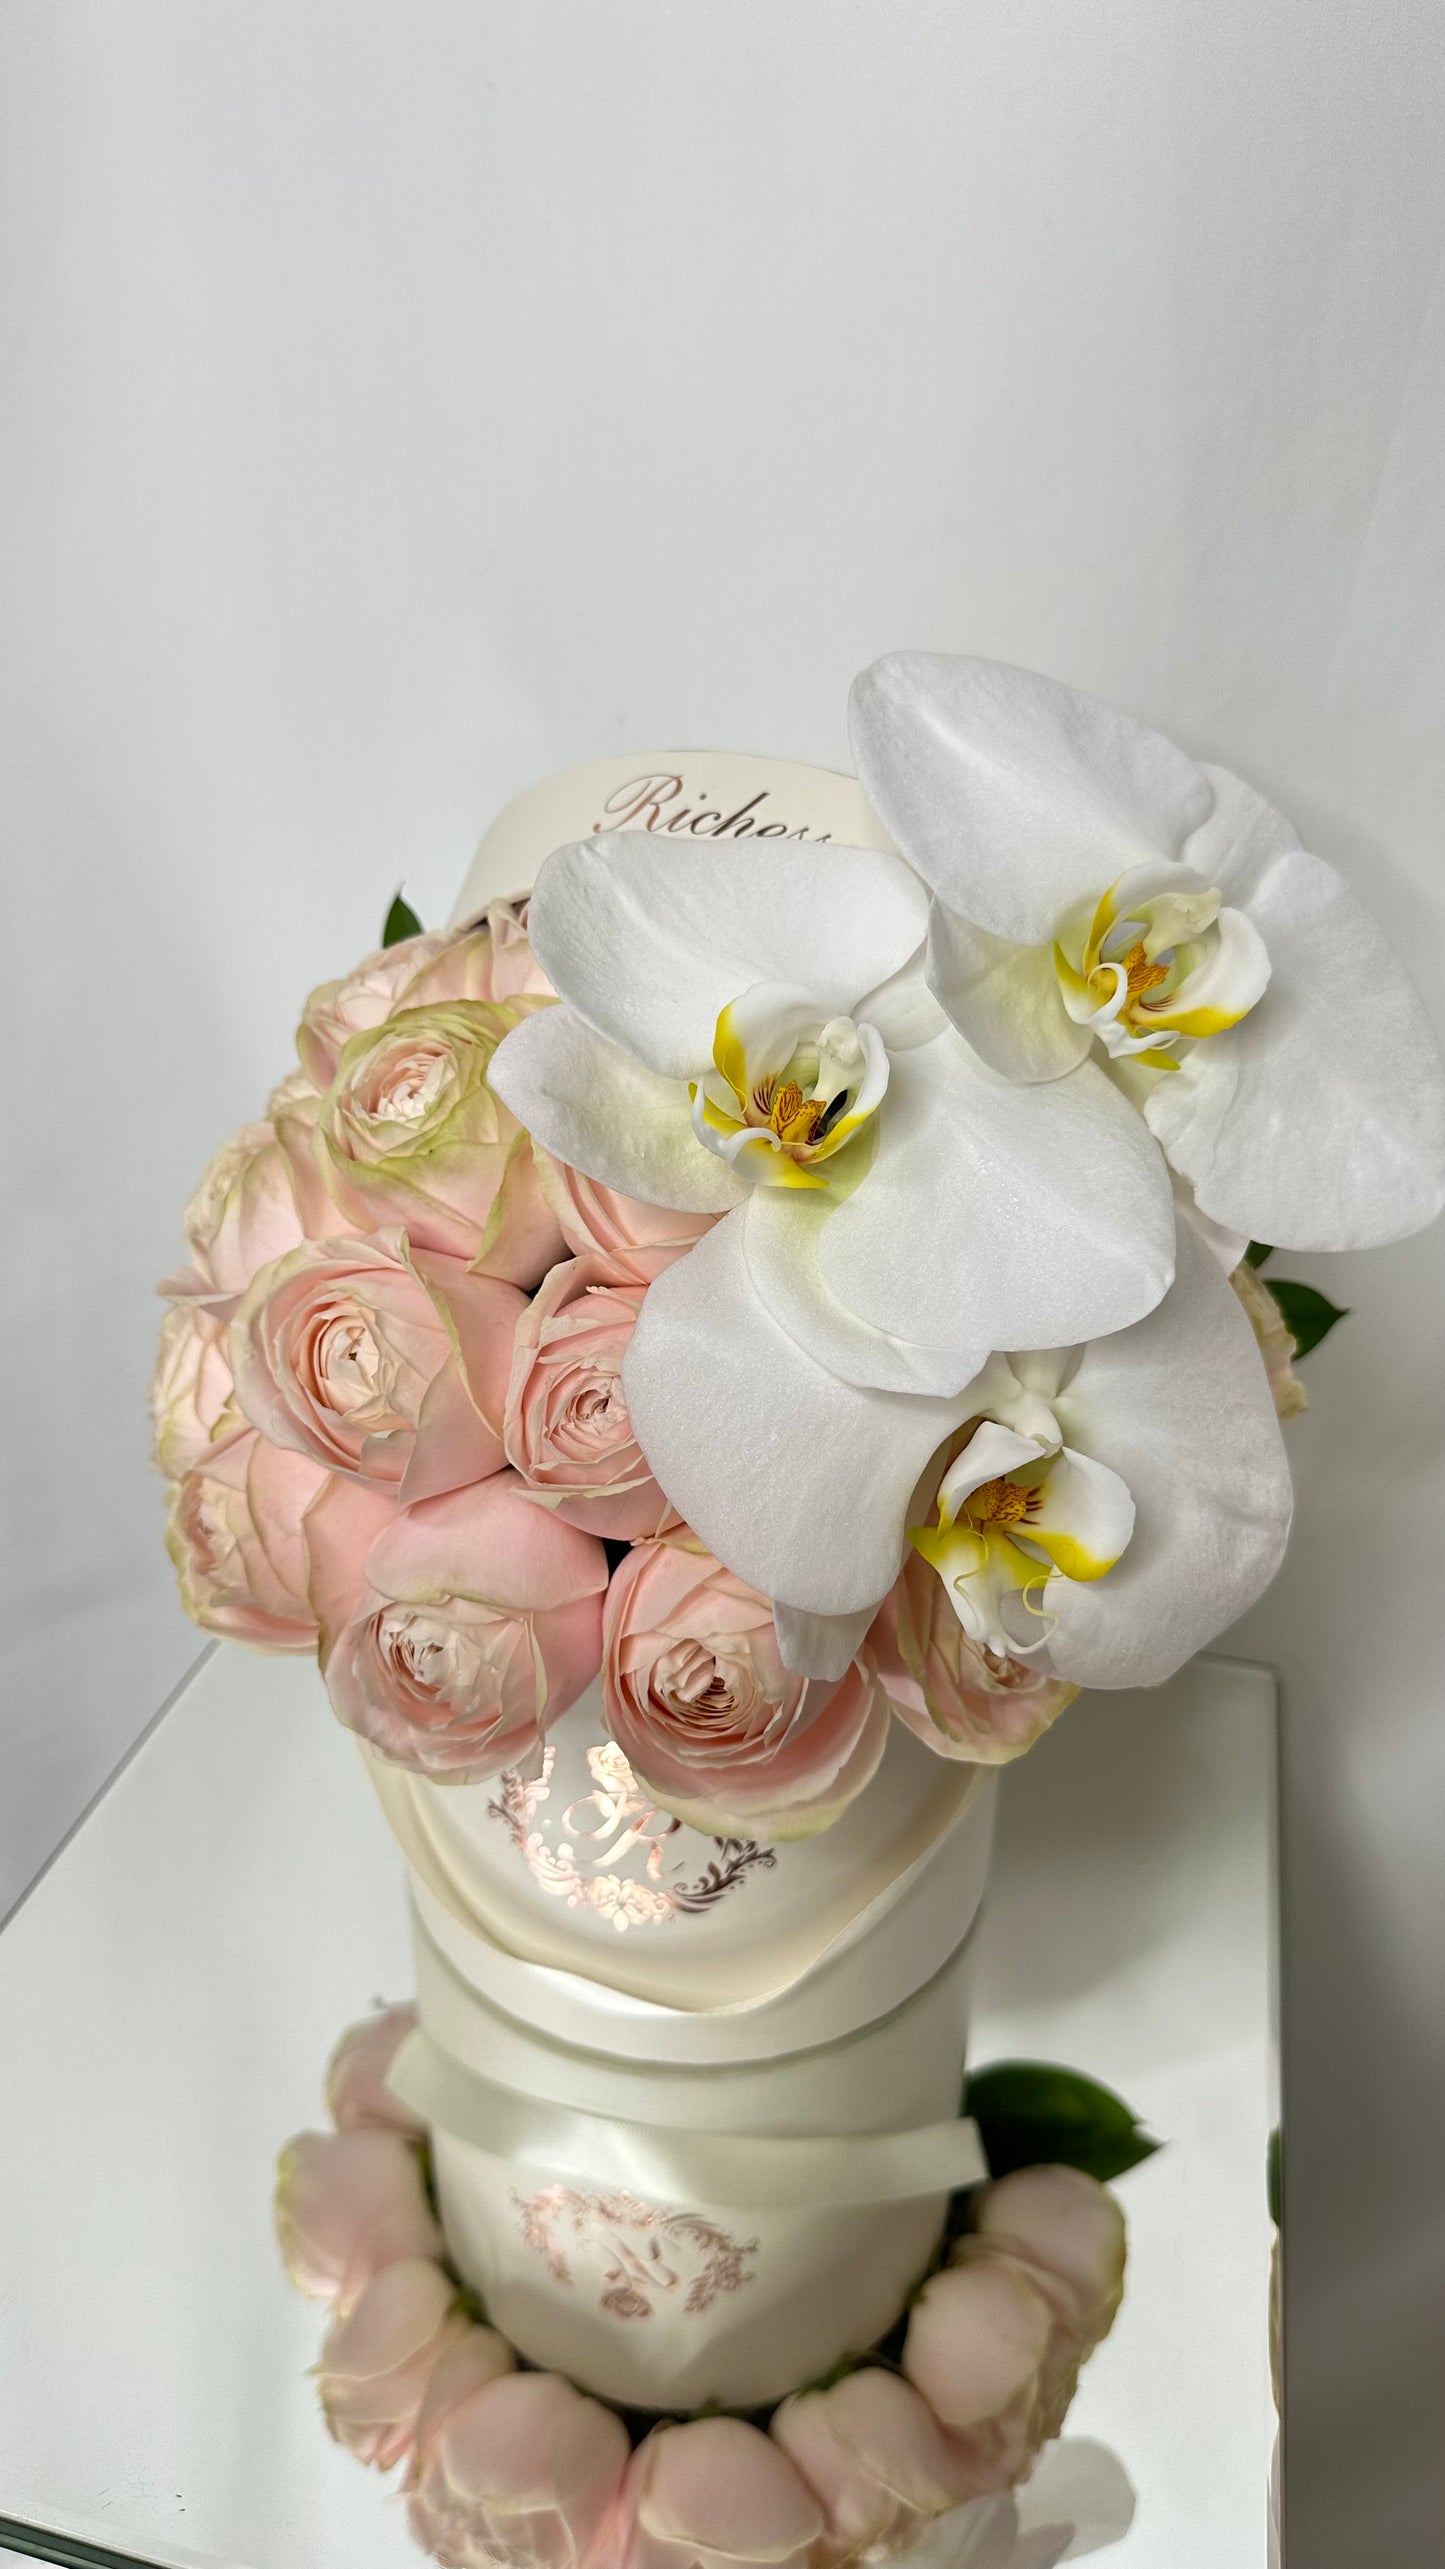 ピンクバラと白胡蝶蘭アレンジメントSサイズ【T様オーダーメイド】